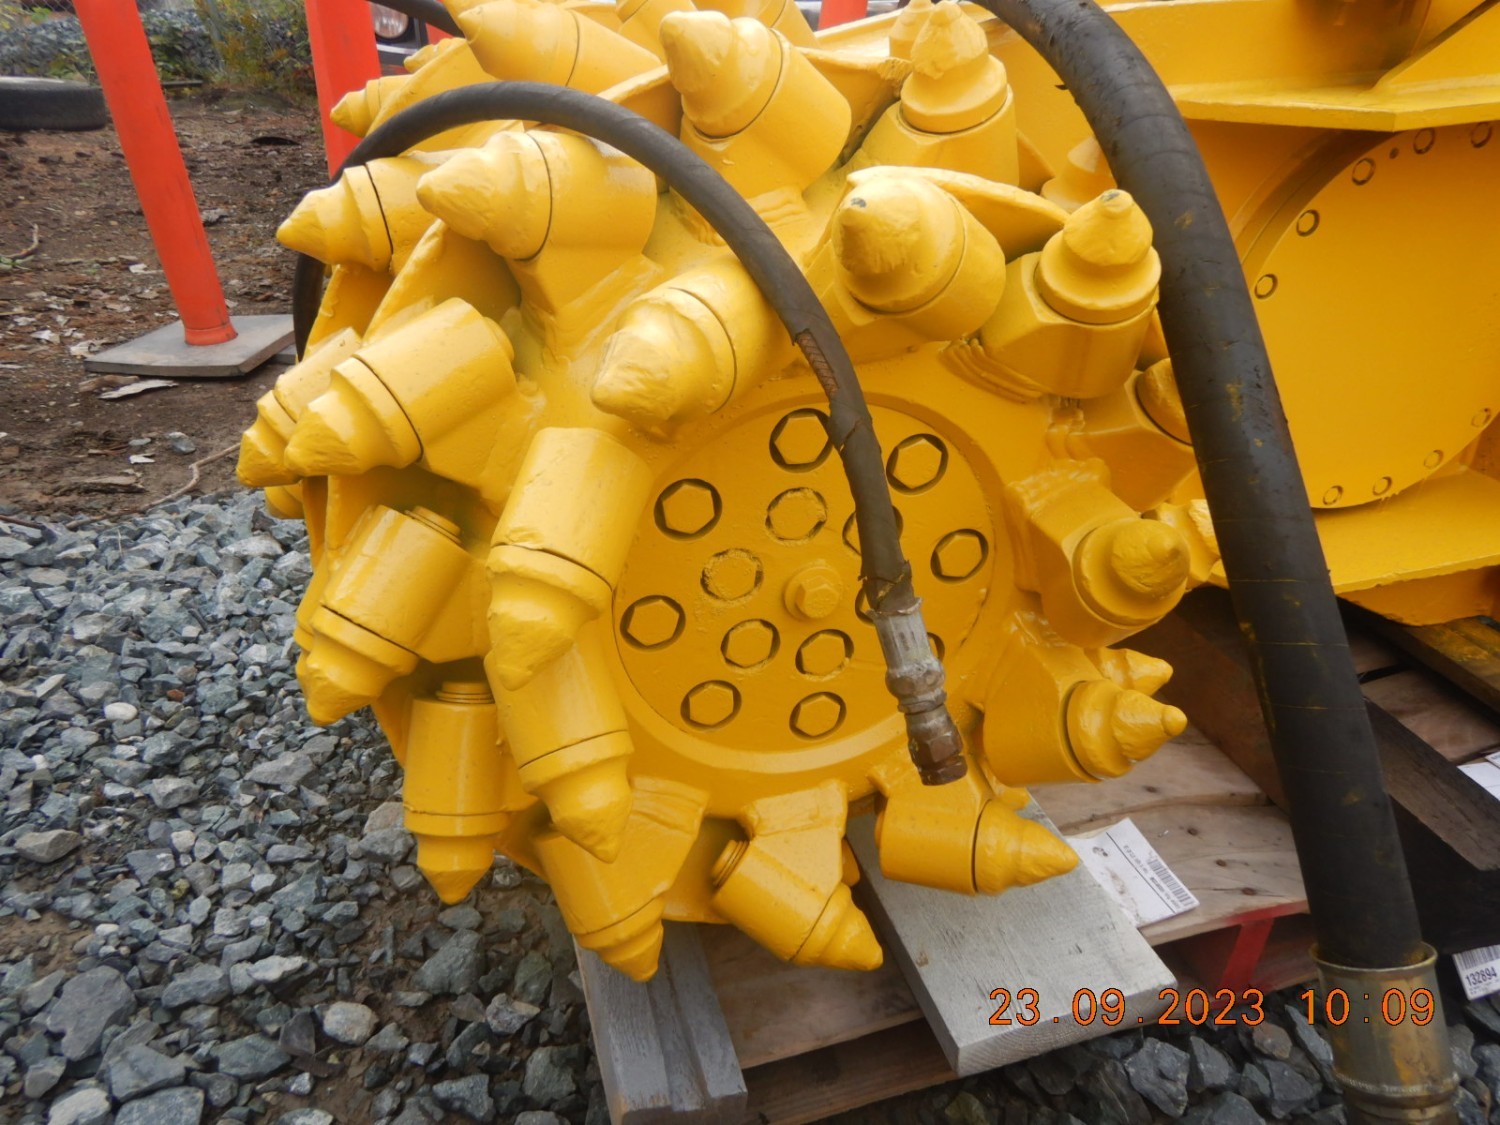 terex-ws-120md-160-hyd-hp-dual-drum-grinder-30-50-ton-excavator-big-5